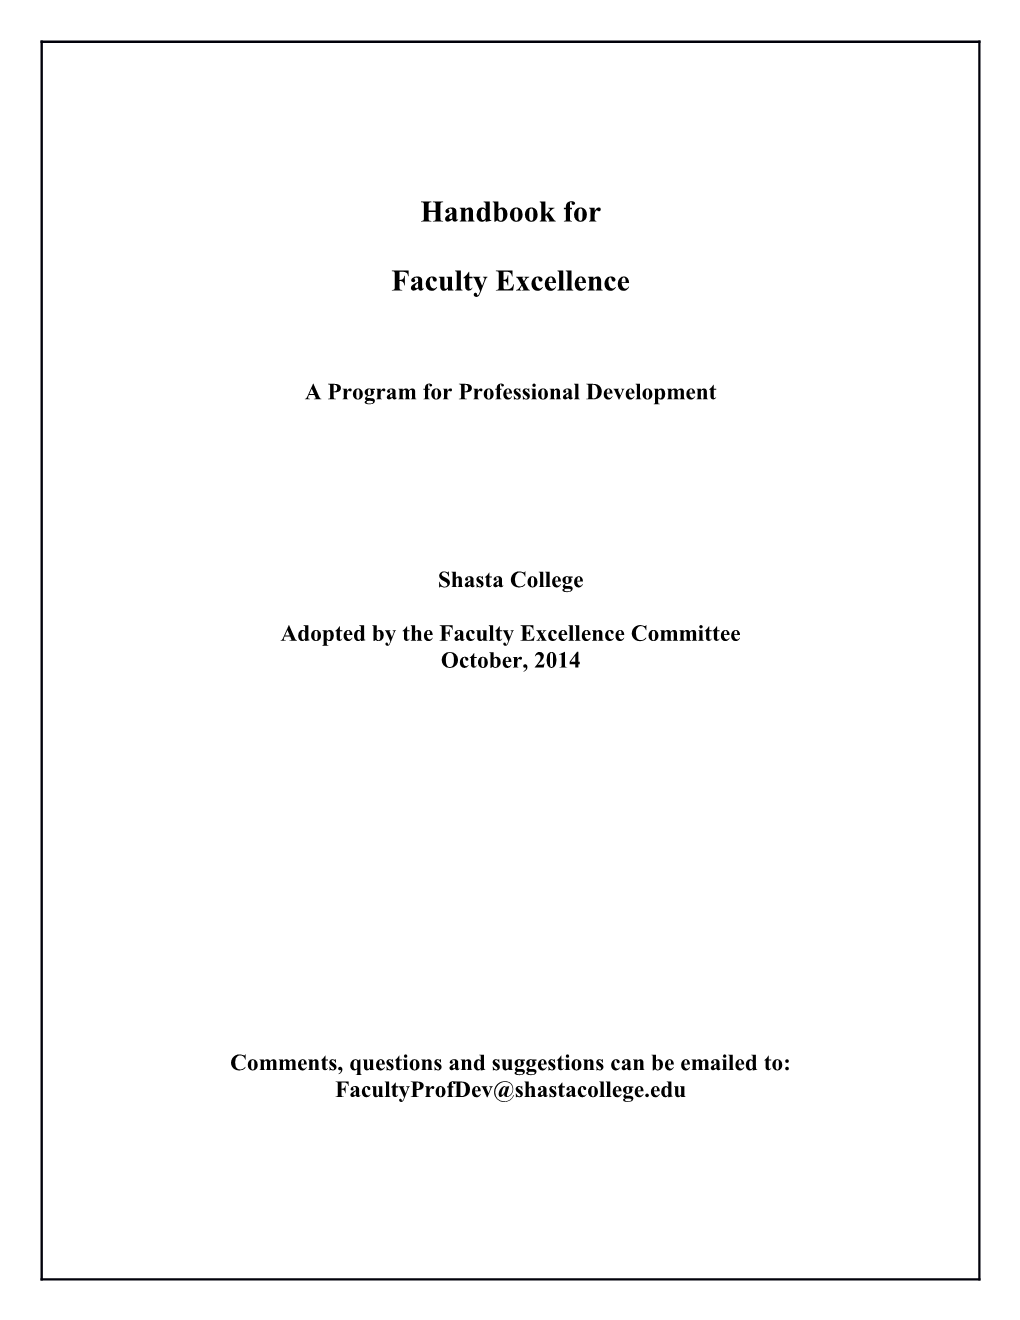 Faculty Excellence Handbook